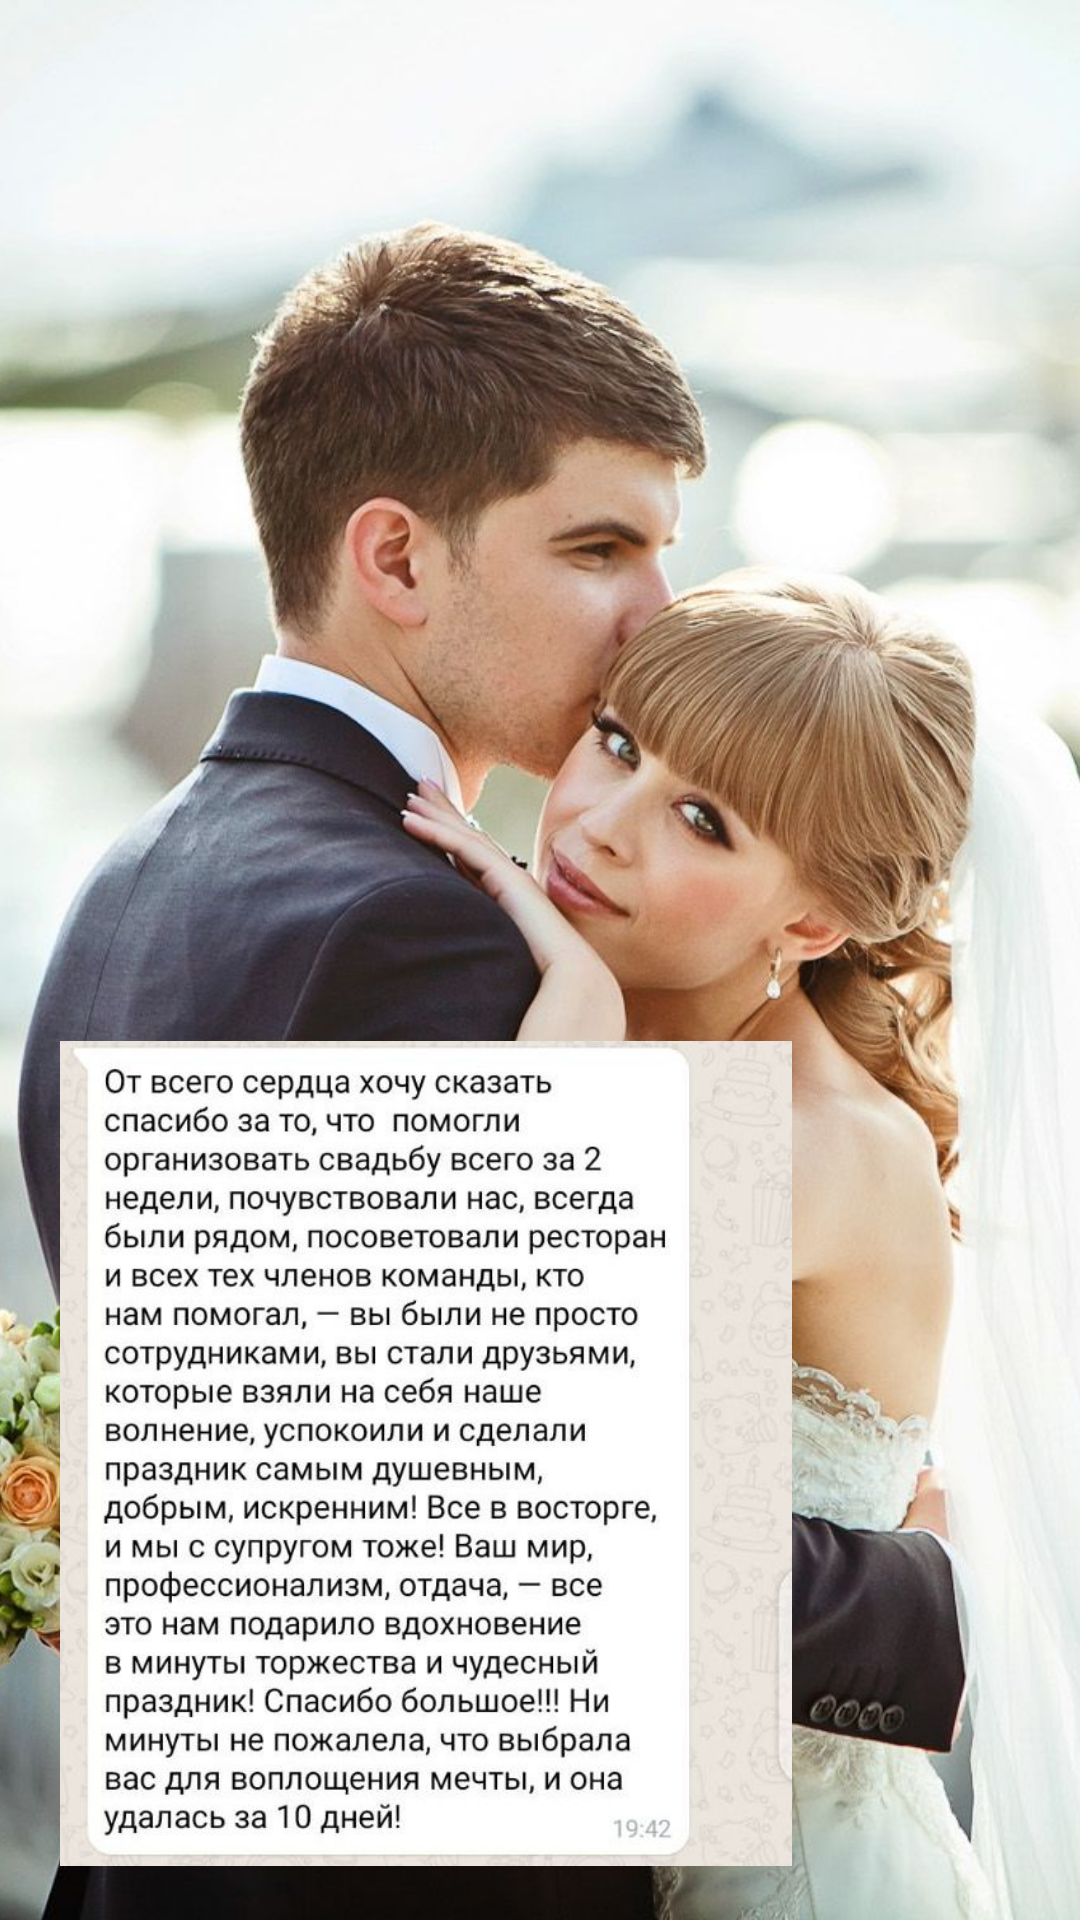 Организация свадьбы в Якутске
от компании Pandaevent